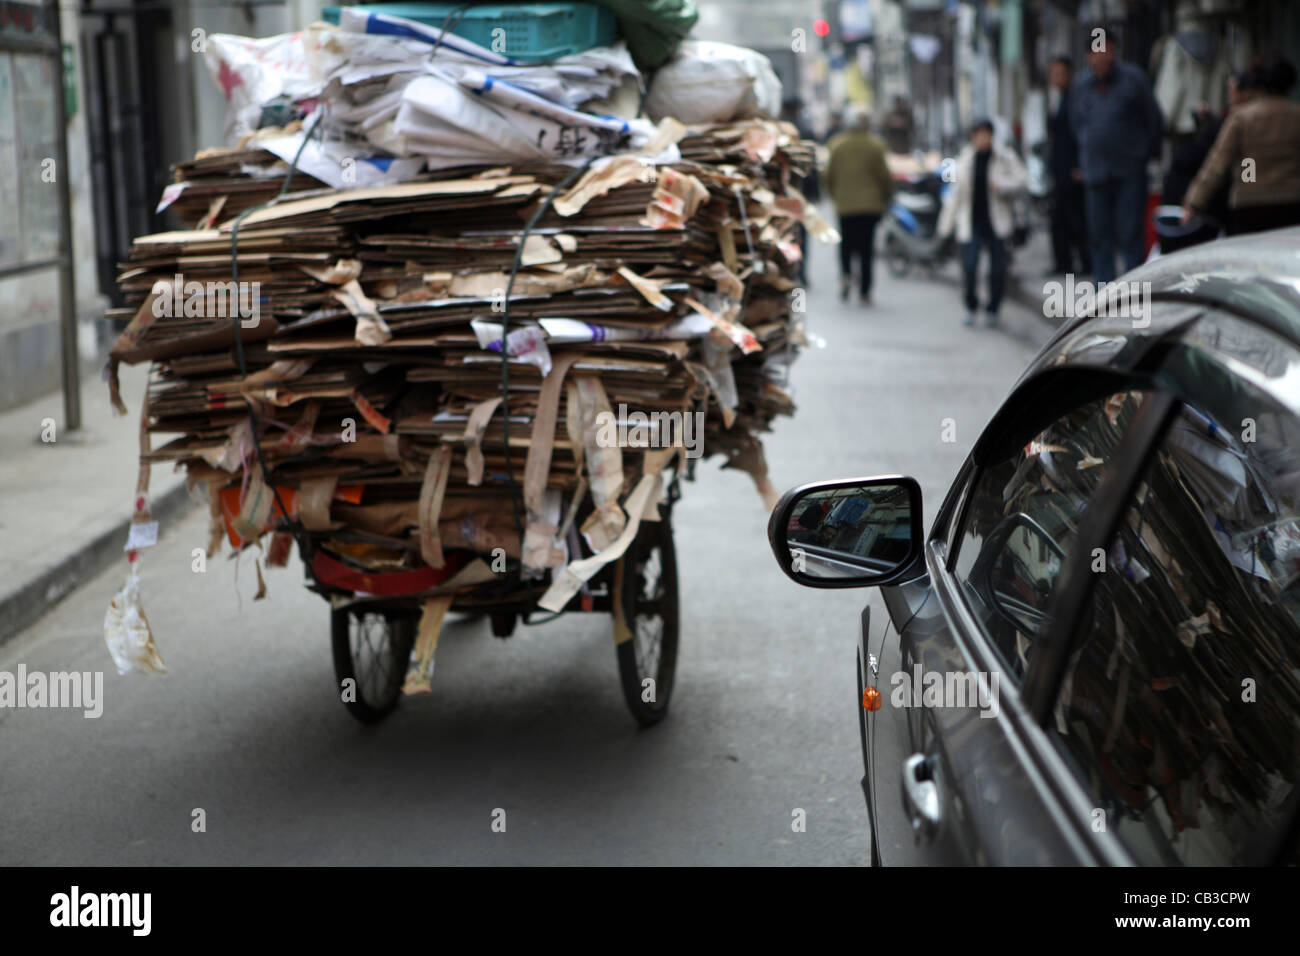 Paysans migrants travailleur fait vivre par la collecte et la vente de matériel, par exemple, qui peuvent être recyclés en carton, Shanghai, Chine, Asie Banque D'Images